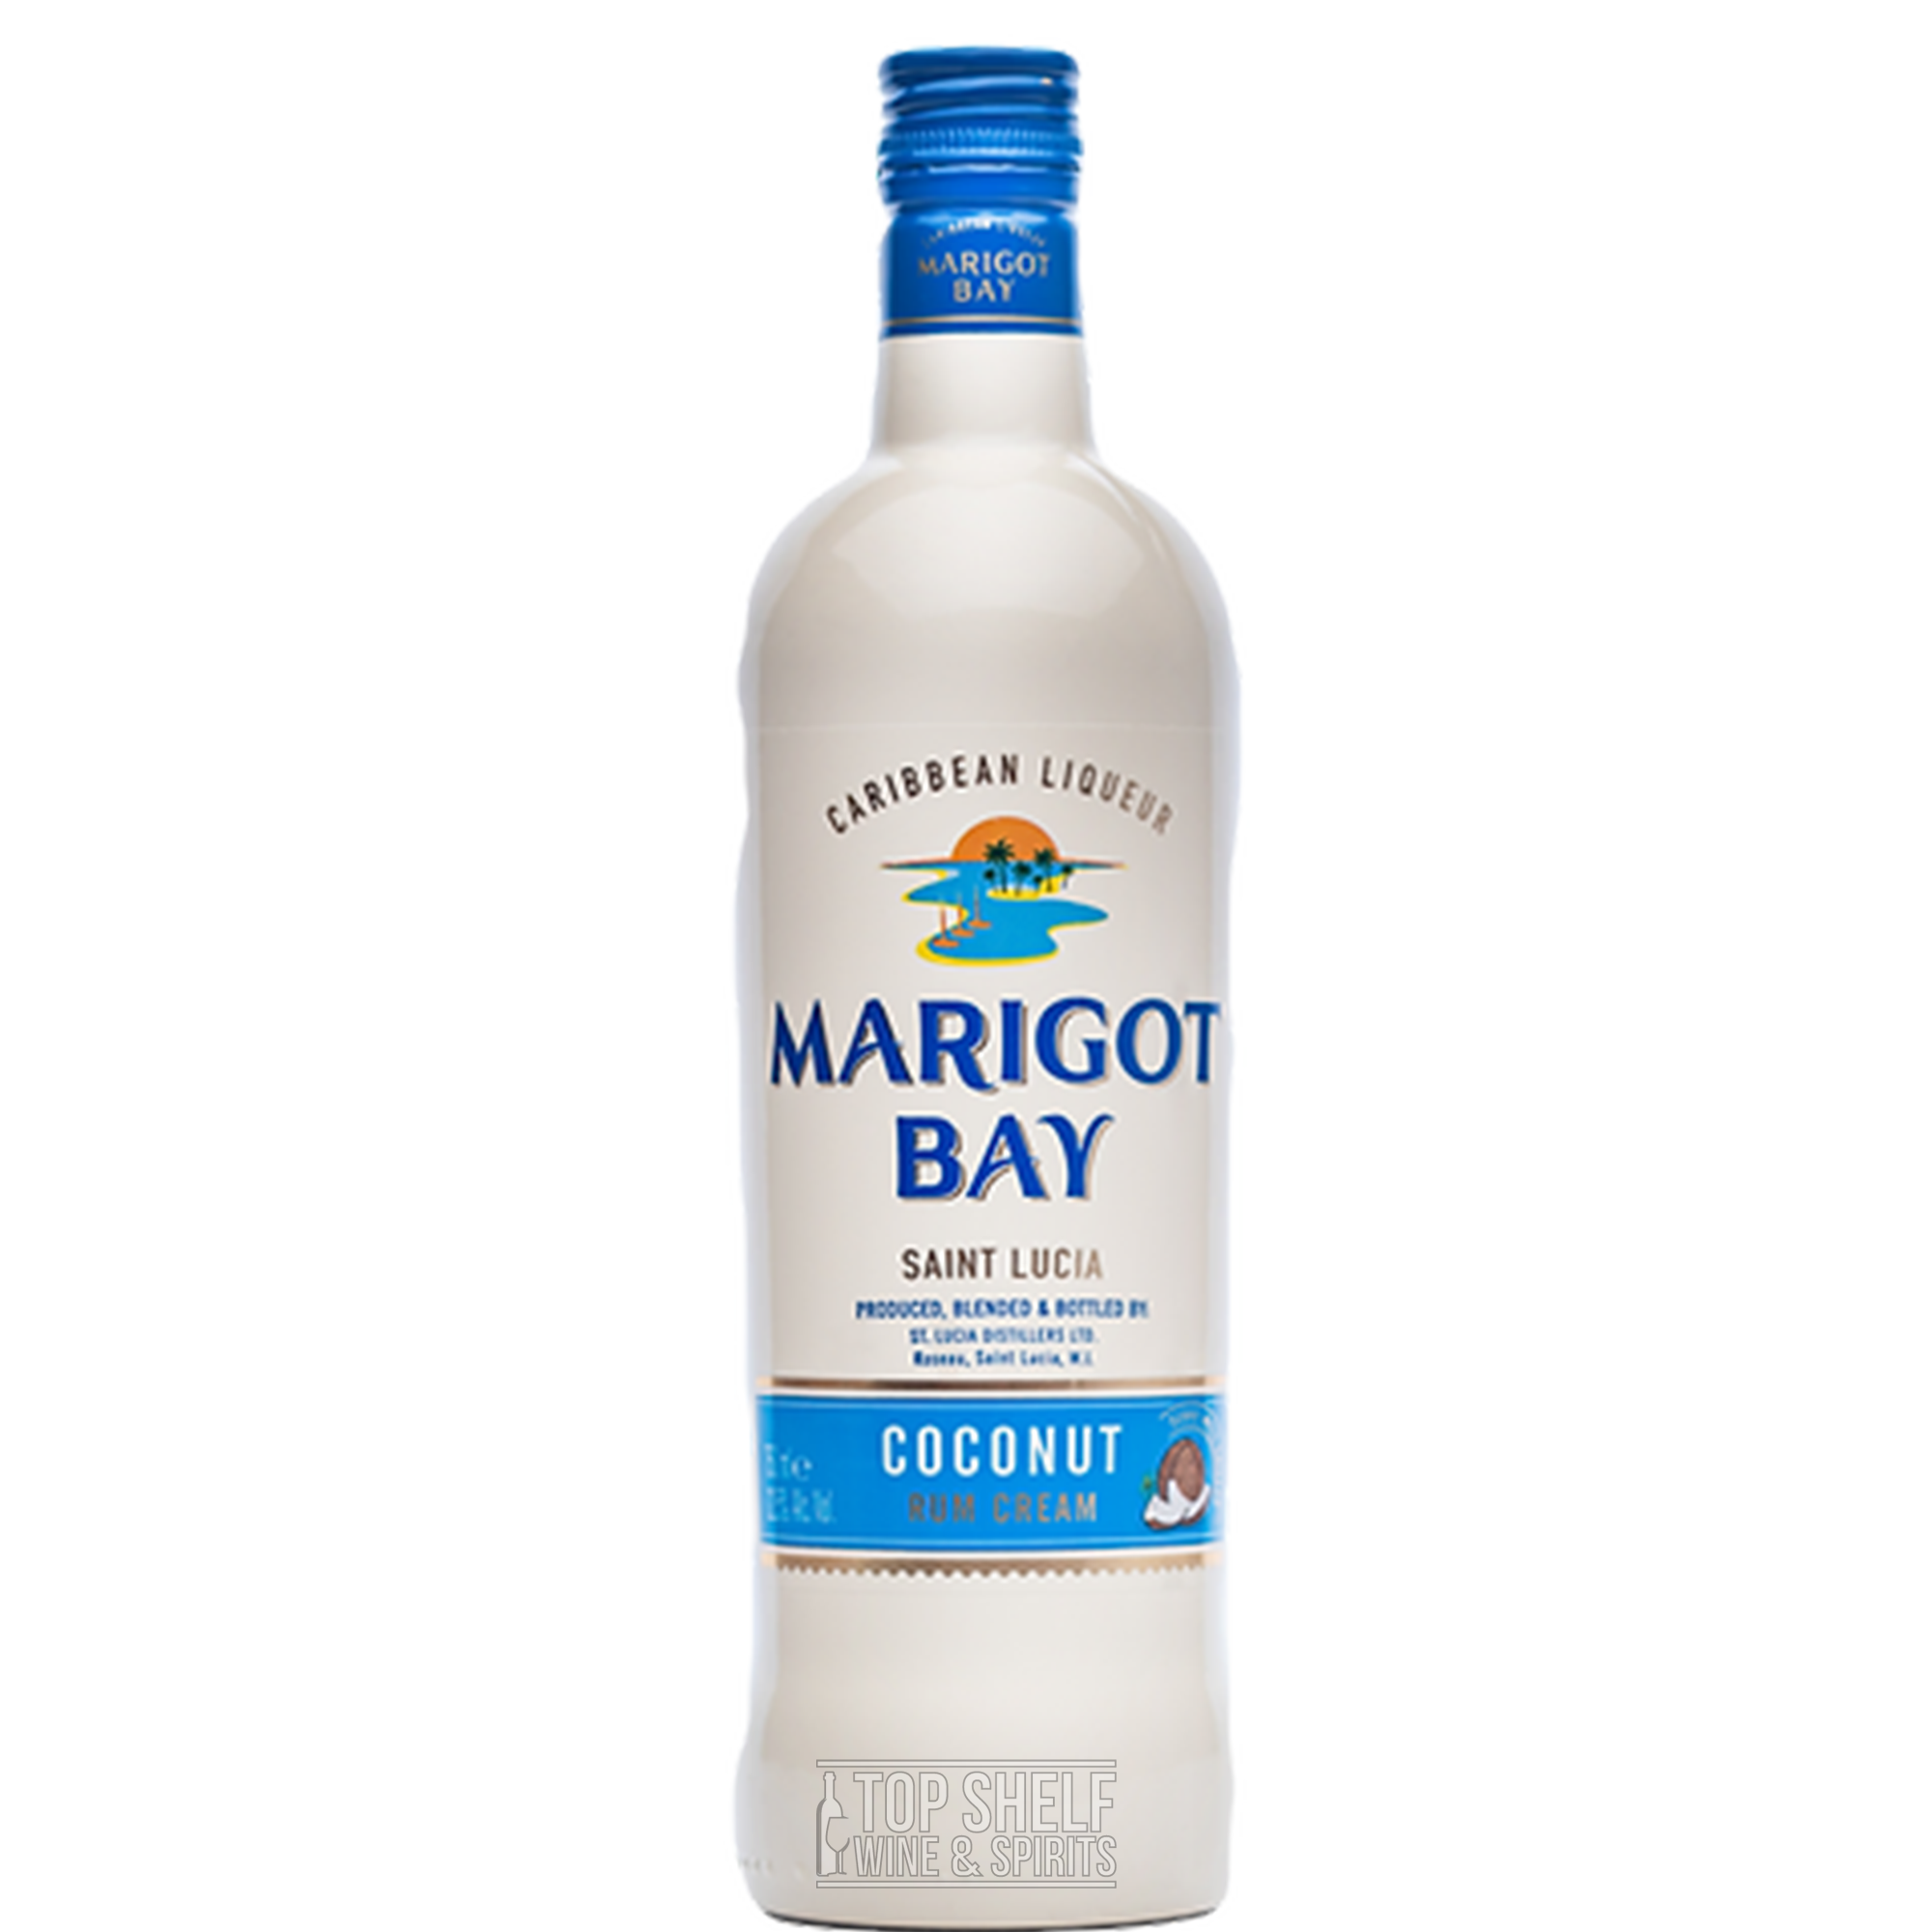 Marigot Bay Coconut Rum Cream